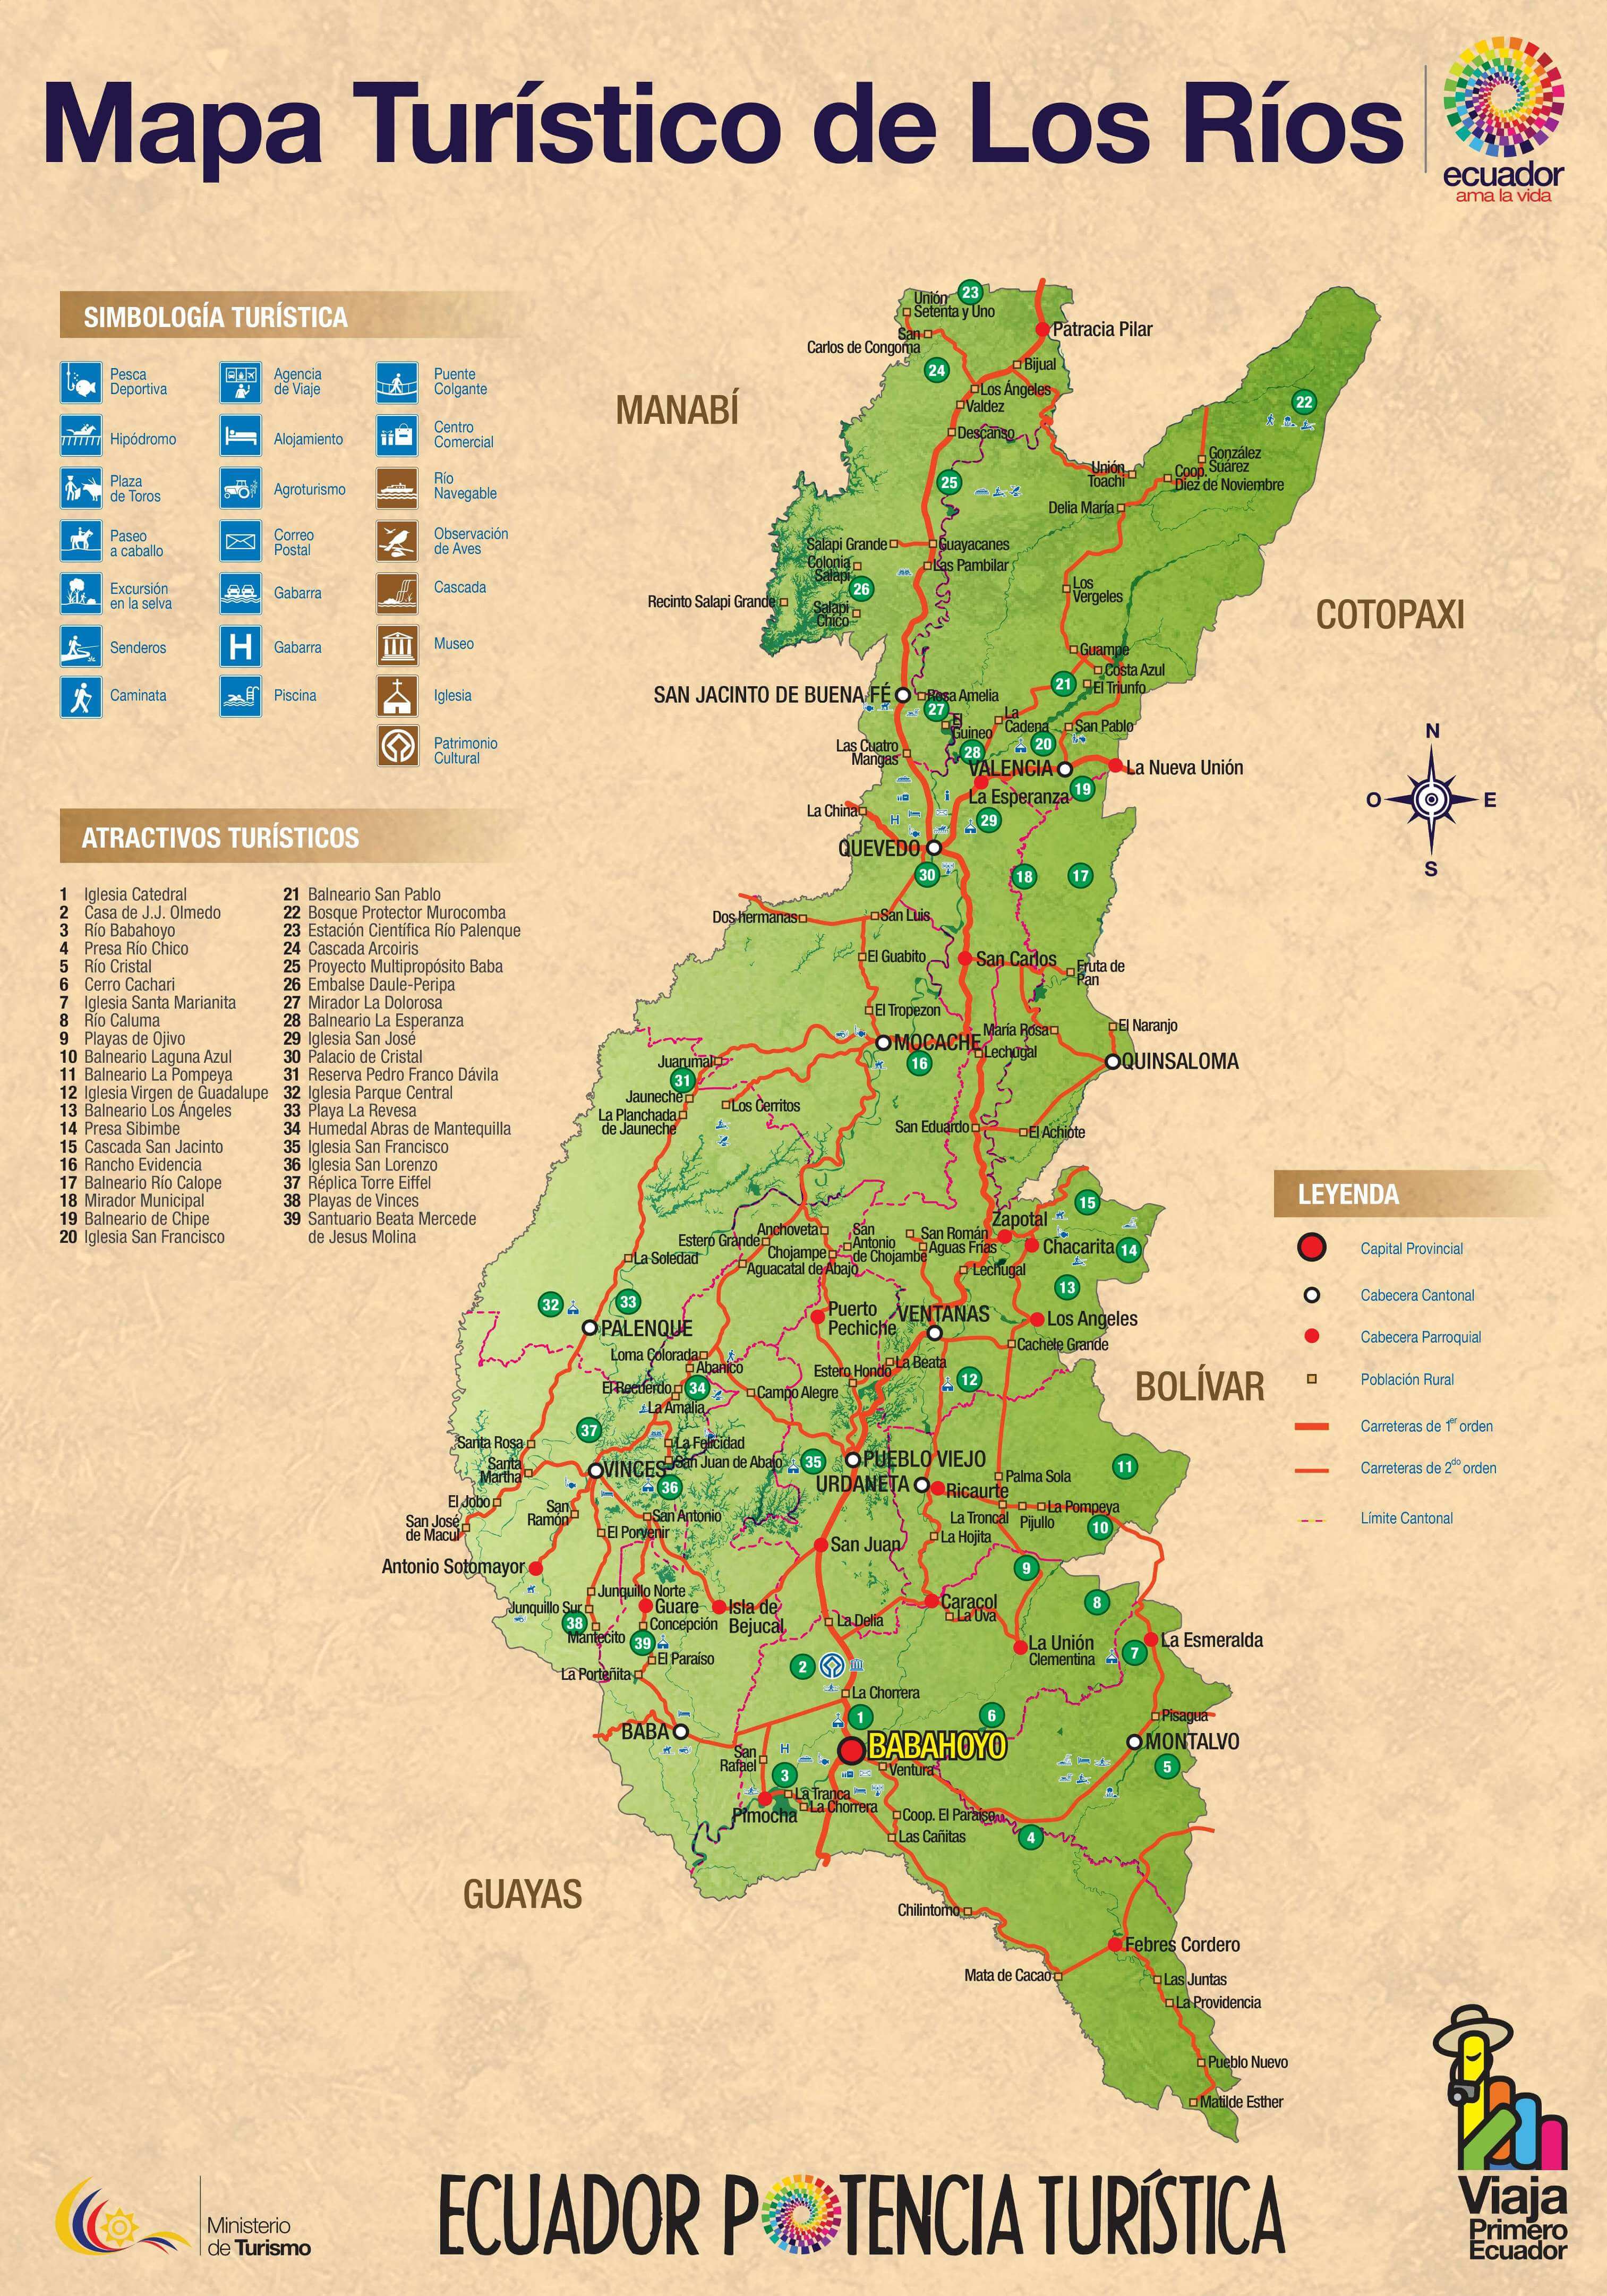 Tourist Attractions Map of (Babahoyo) Los Ríos, Ecuador - PlanetAndes